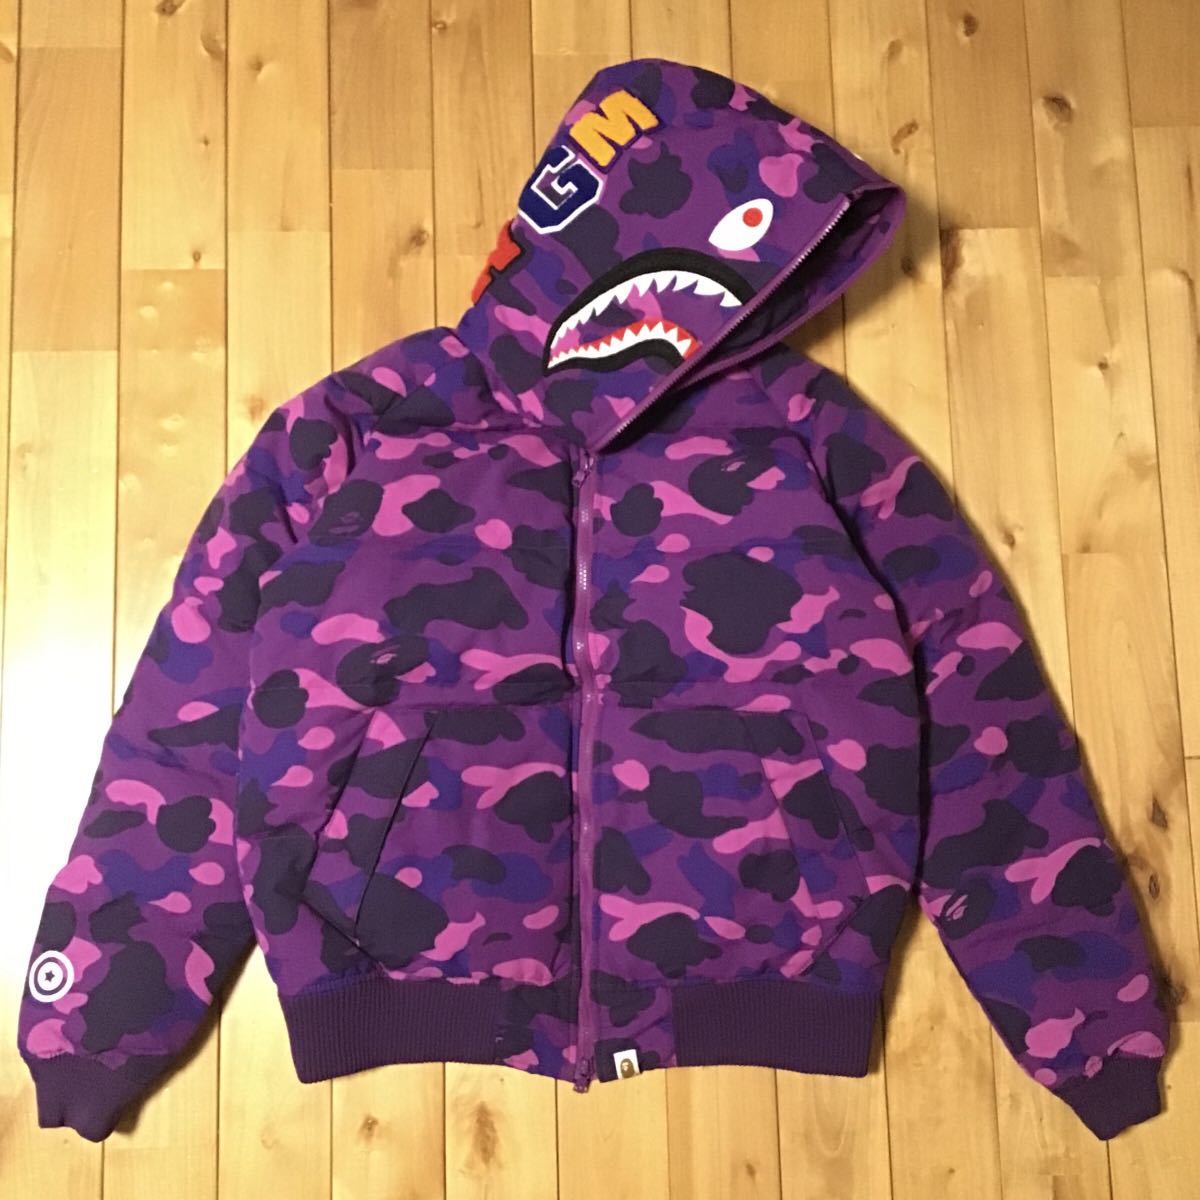 シャーク パーカー ダウンジャケット Lサイズ shark full zip hoodie jacket a bathing ape BAPE エイプ ベイプ Purple camo 迷彩 w2958